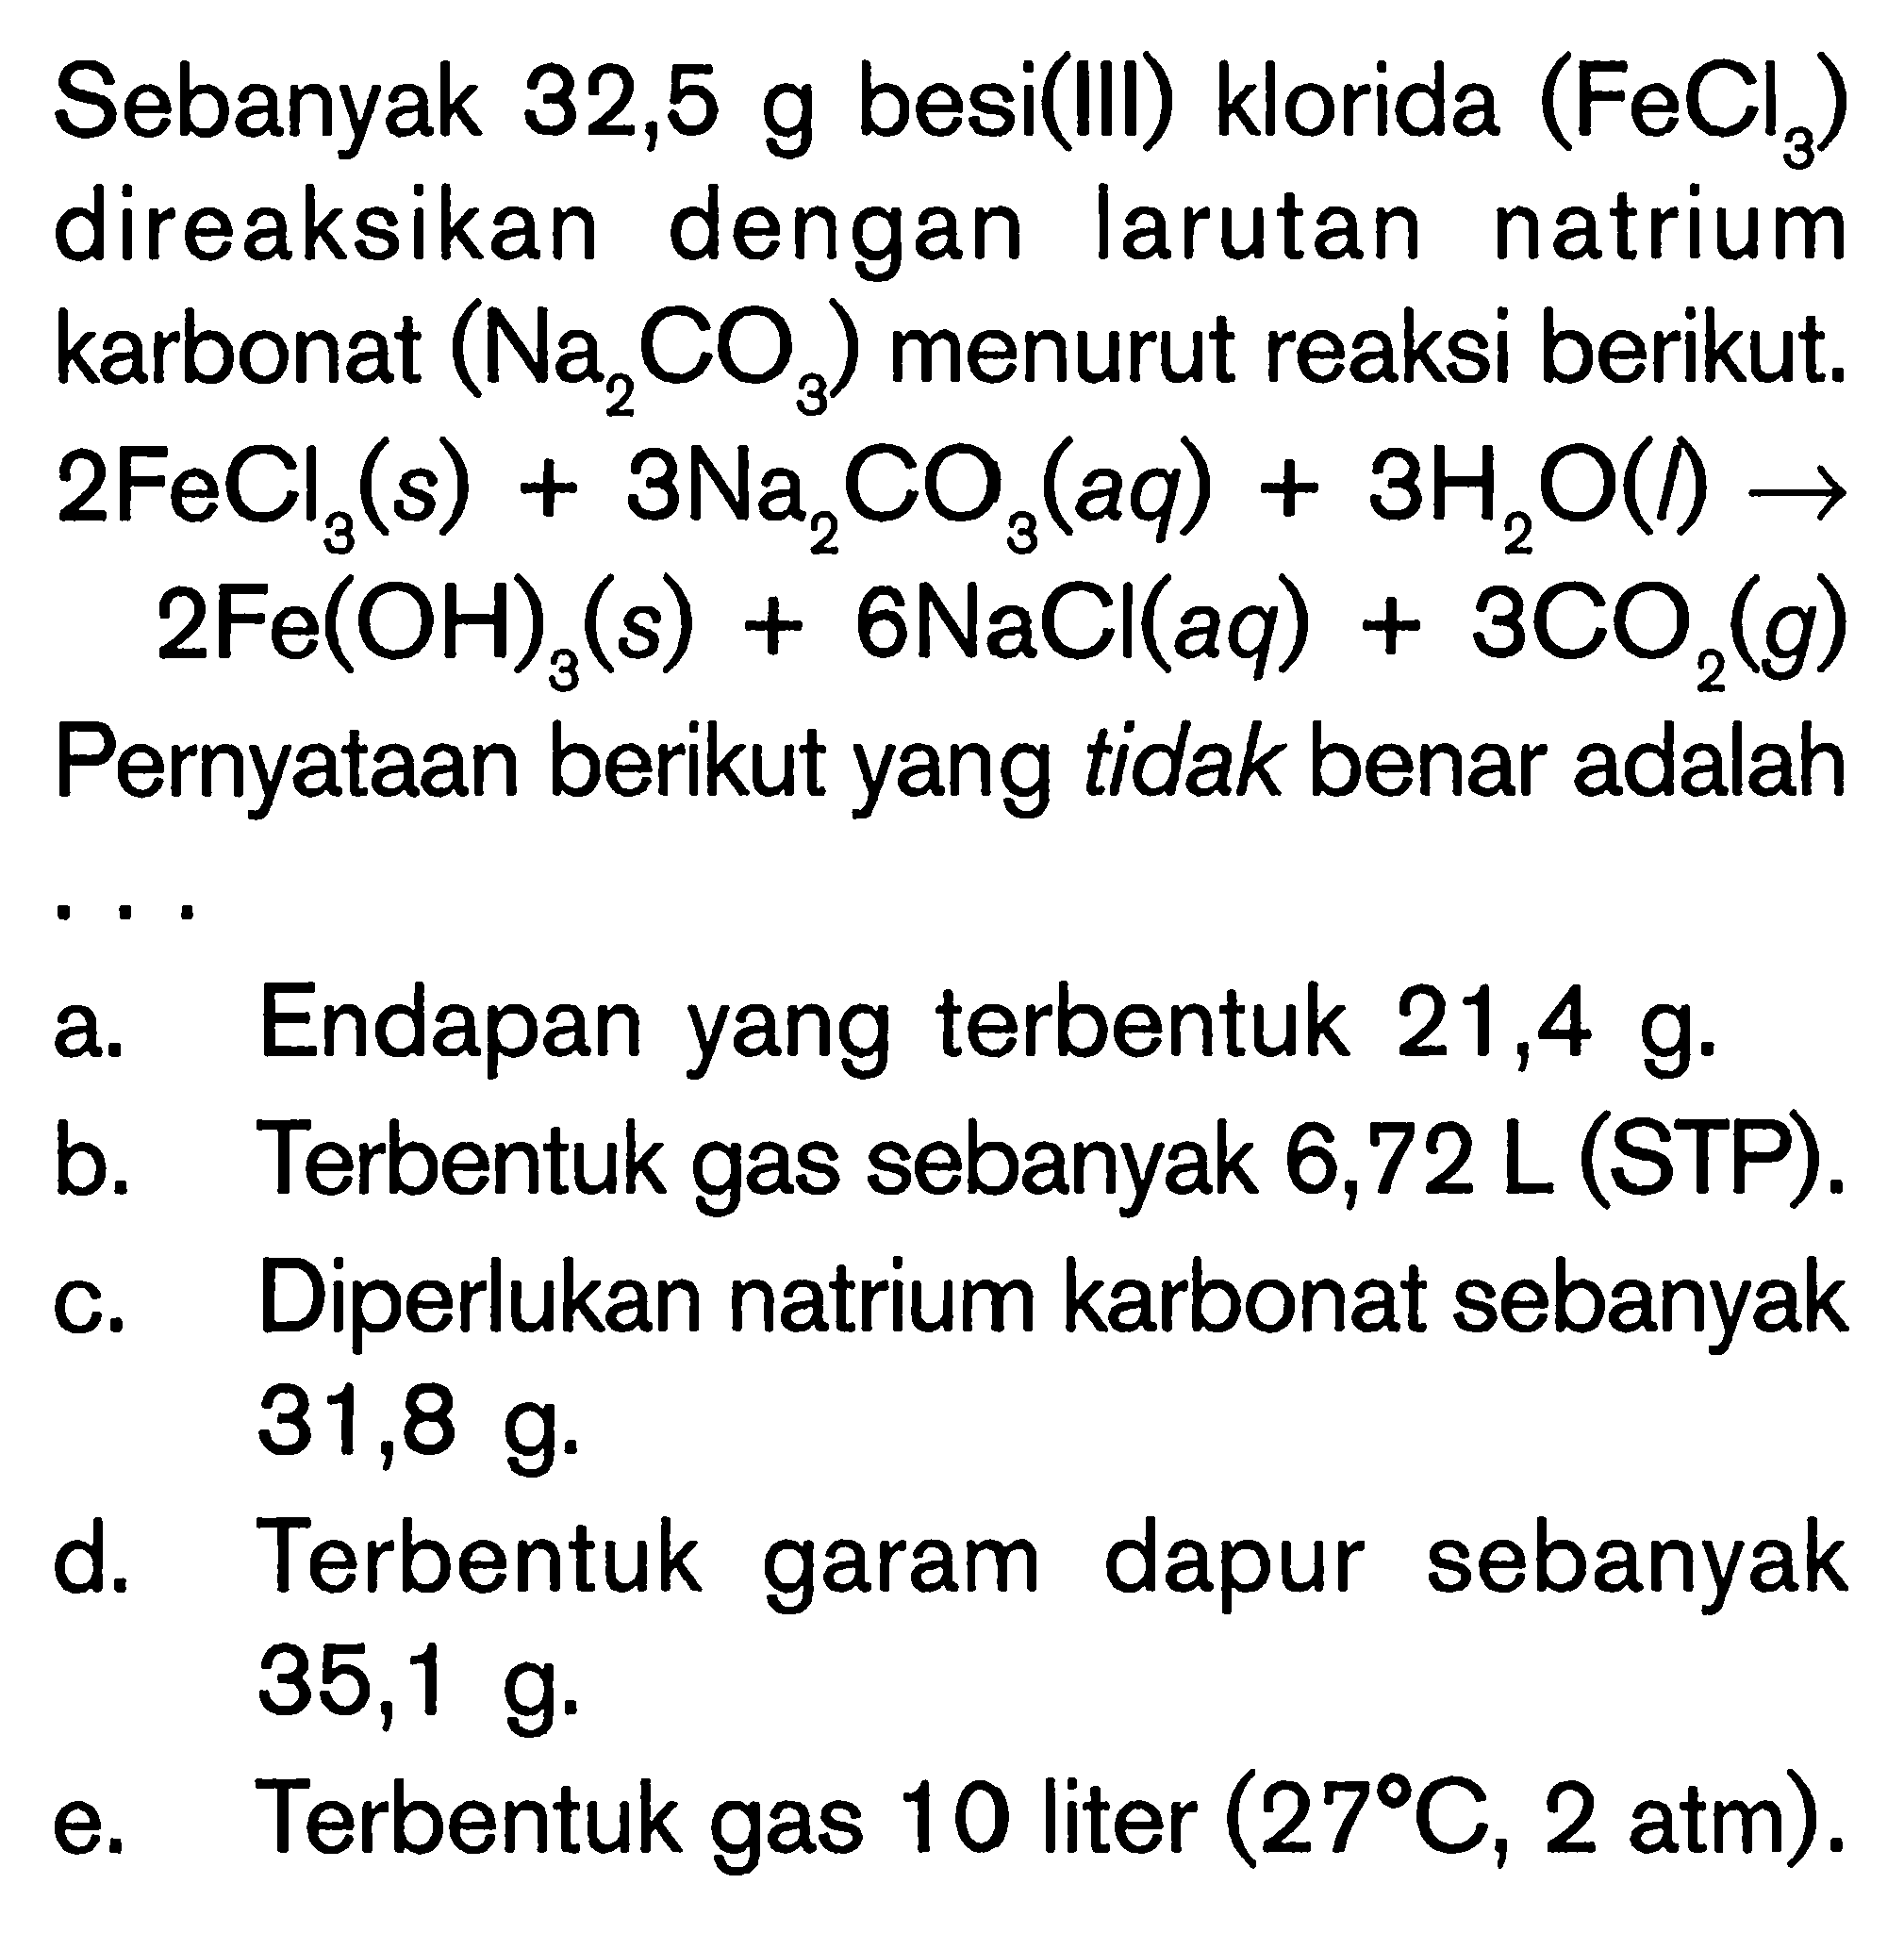 Sebanyak 32,5 g besi(III) klorida (FeCl3) direaksikan dengan larutan natrium karbonat (Na2CO3) menurut reaksi berikut. 2FeCl3 (s) + 3Na2CO3 (aq) + 3H2O (l) -> 2Fe(OH)3 (s) + 6NaCl (aq) + 3CO2 (g) Pernyataan berikut yang tidak benar adalah ...